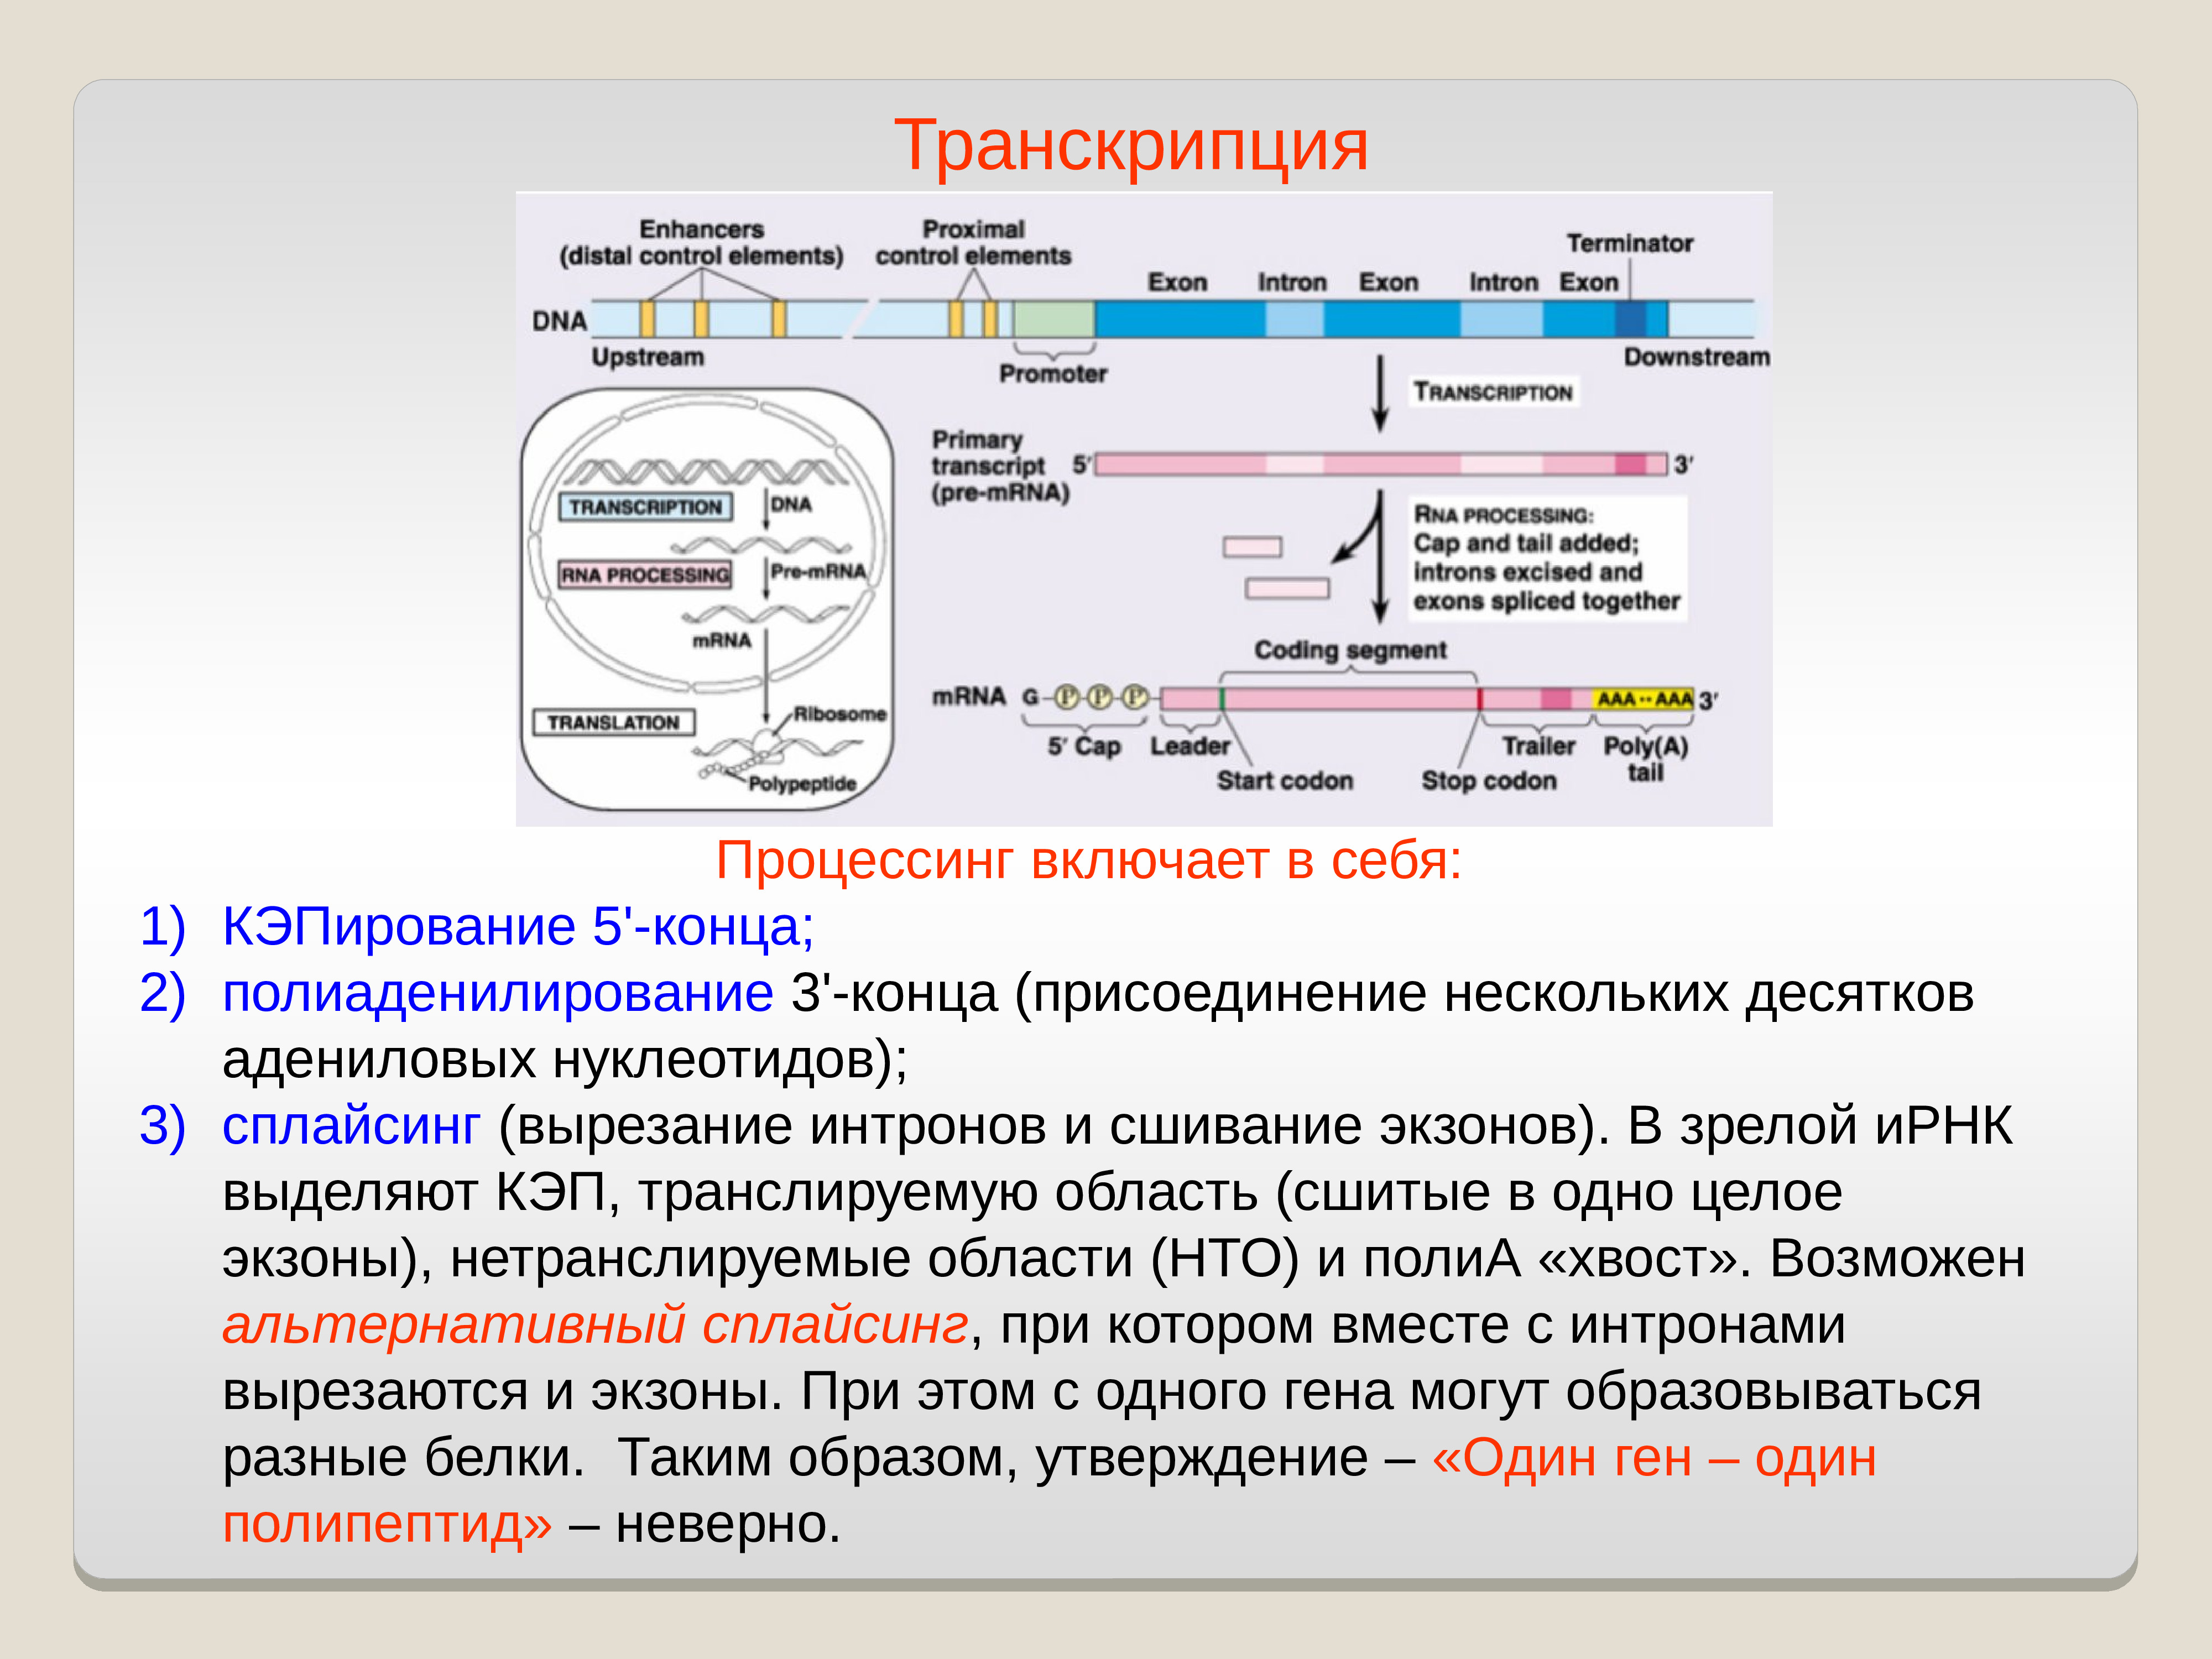 Биосинтез гена. Сплайсинг процессинг транскрипция трансляция. Кэпирование Полиаденилирование сплайсинг. Транскрипция процессинг РНК. Транскрипция процессинг трансляция Кэпирование.